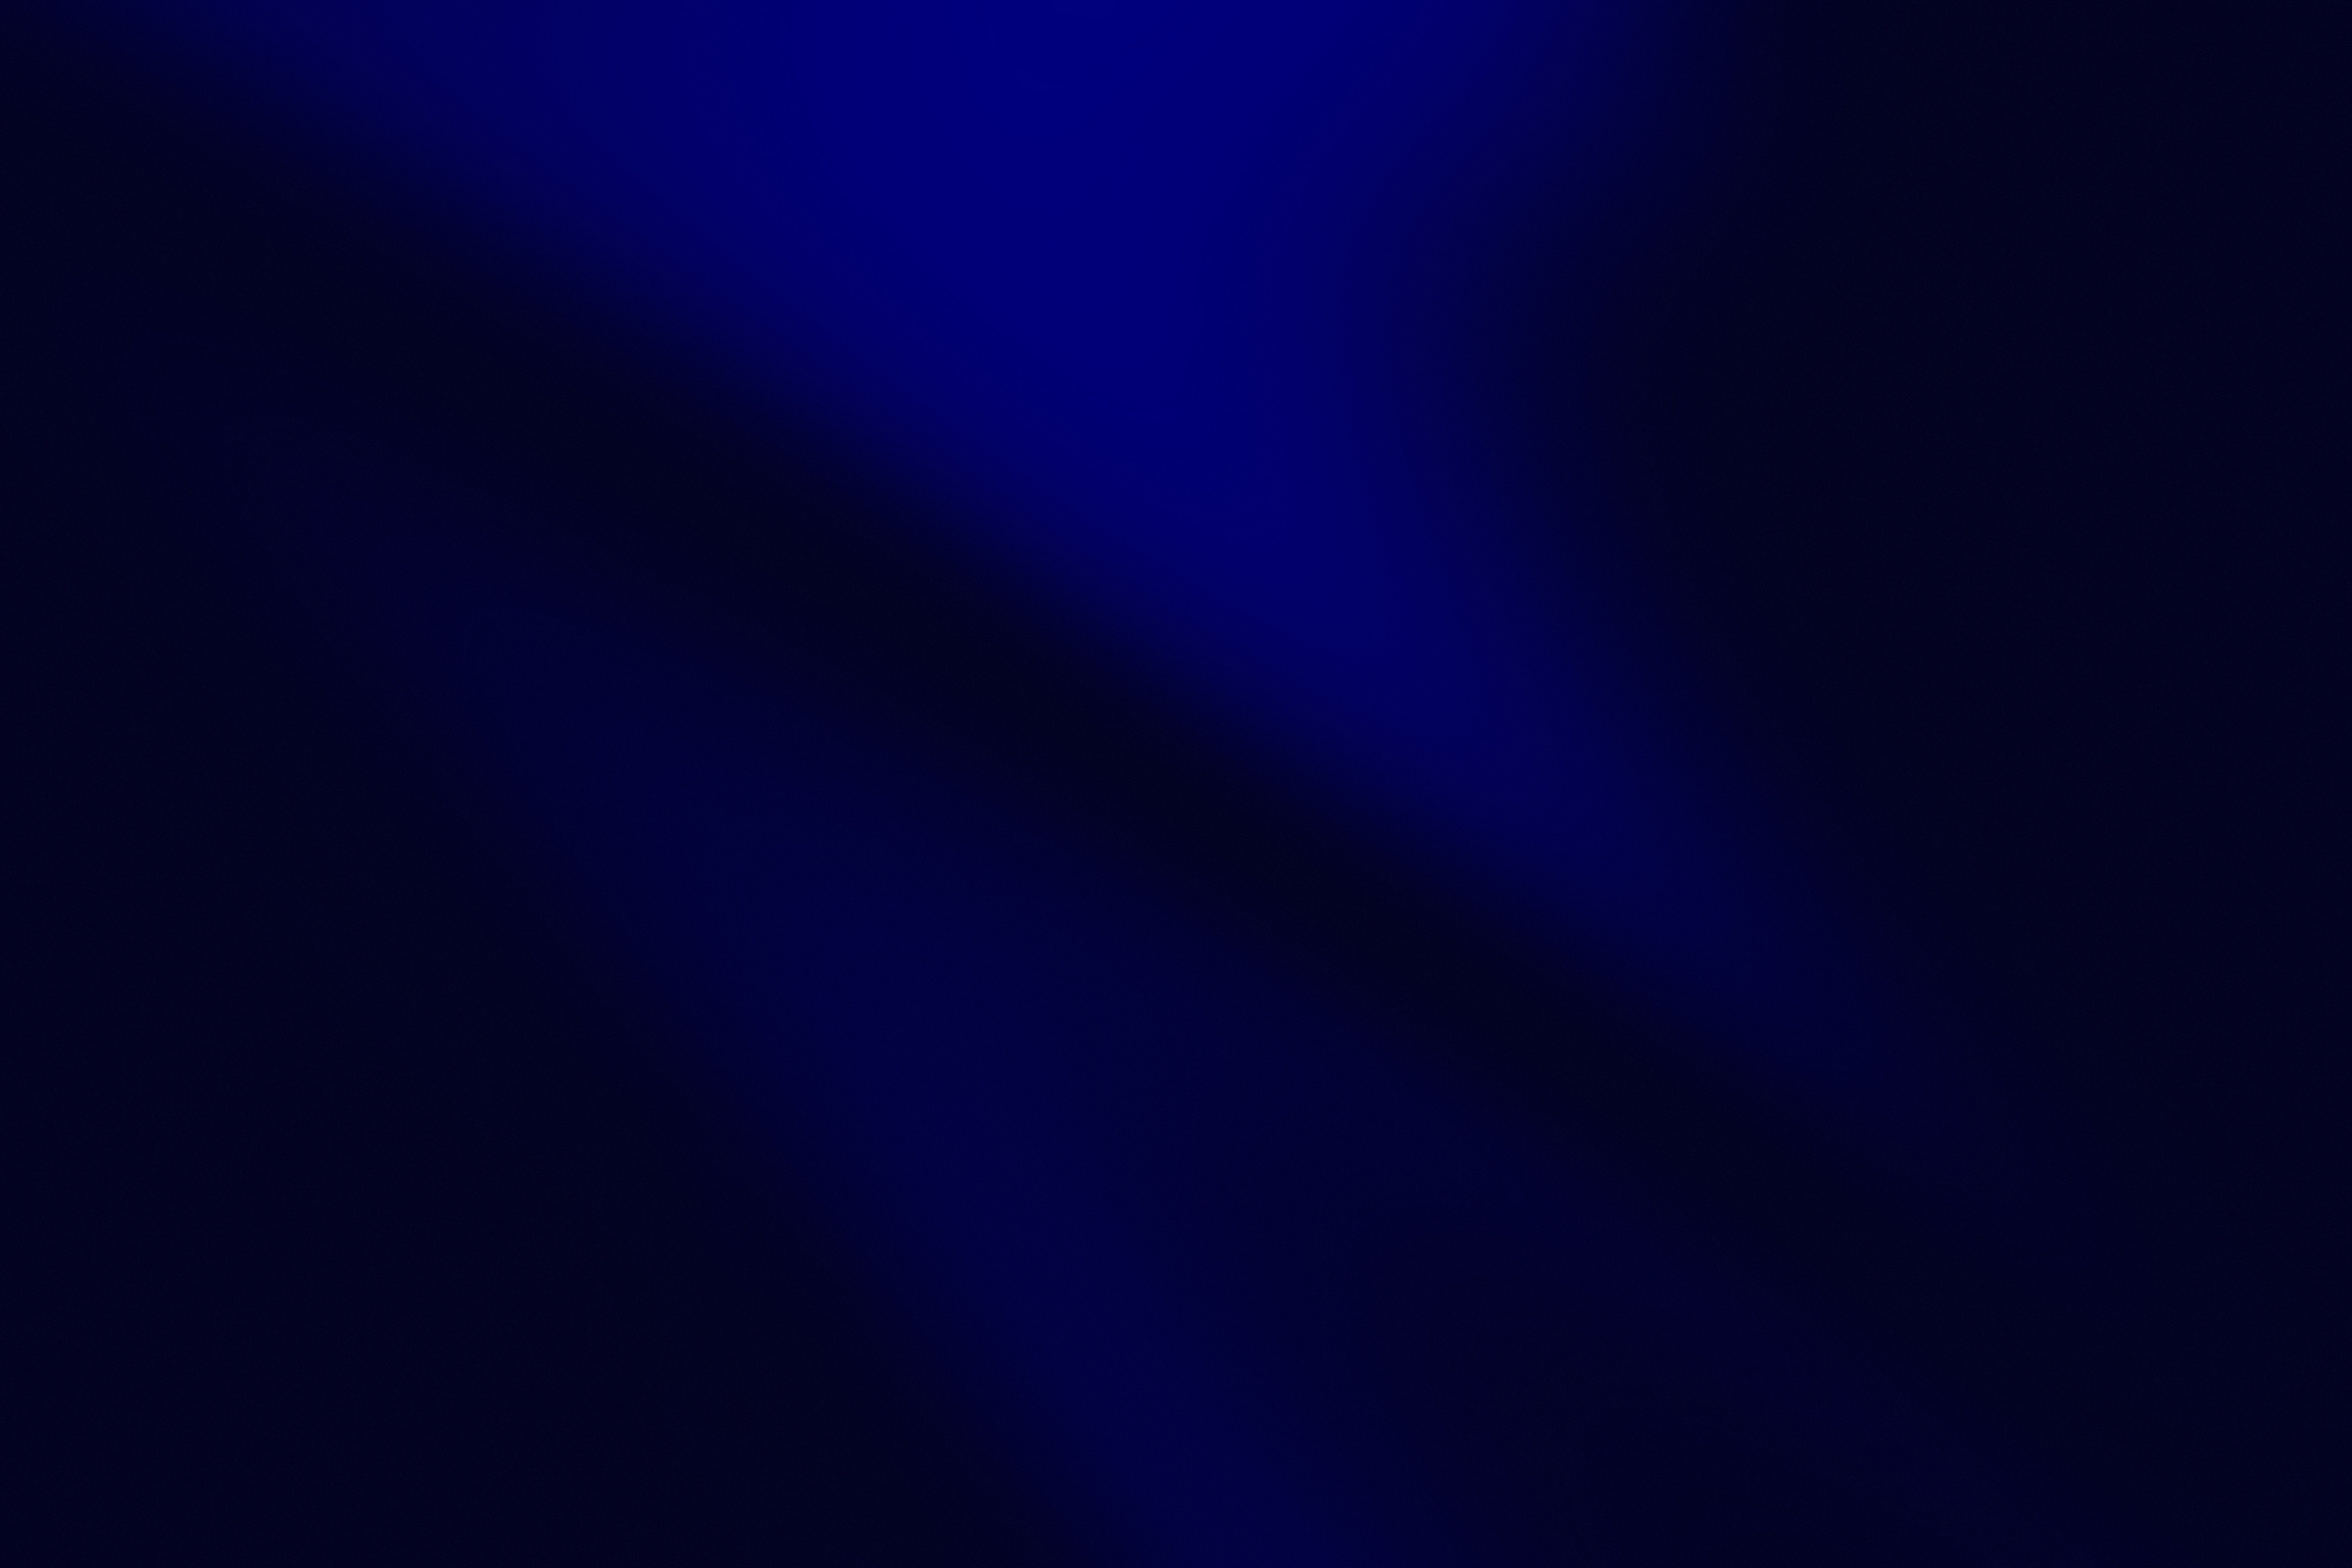 Navy Blue Gradient Background